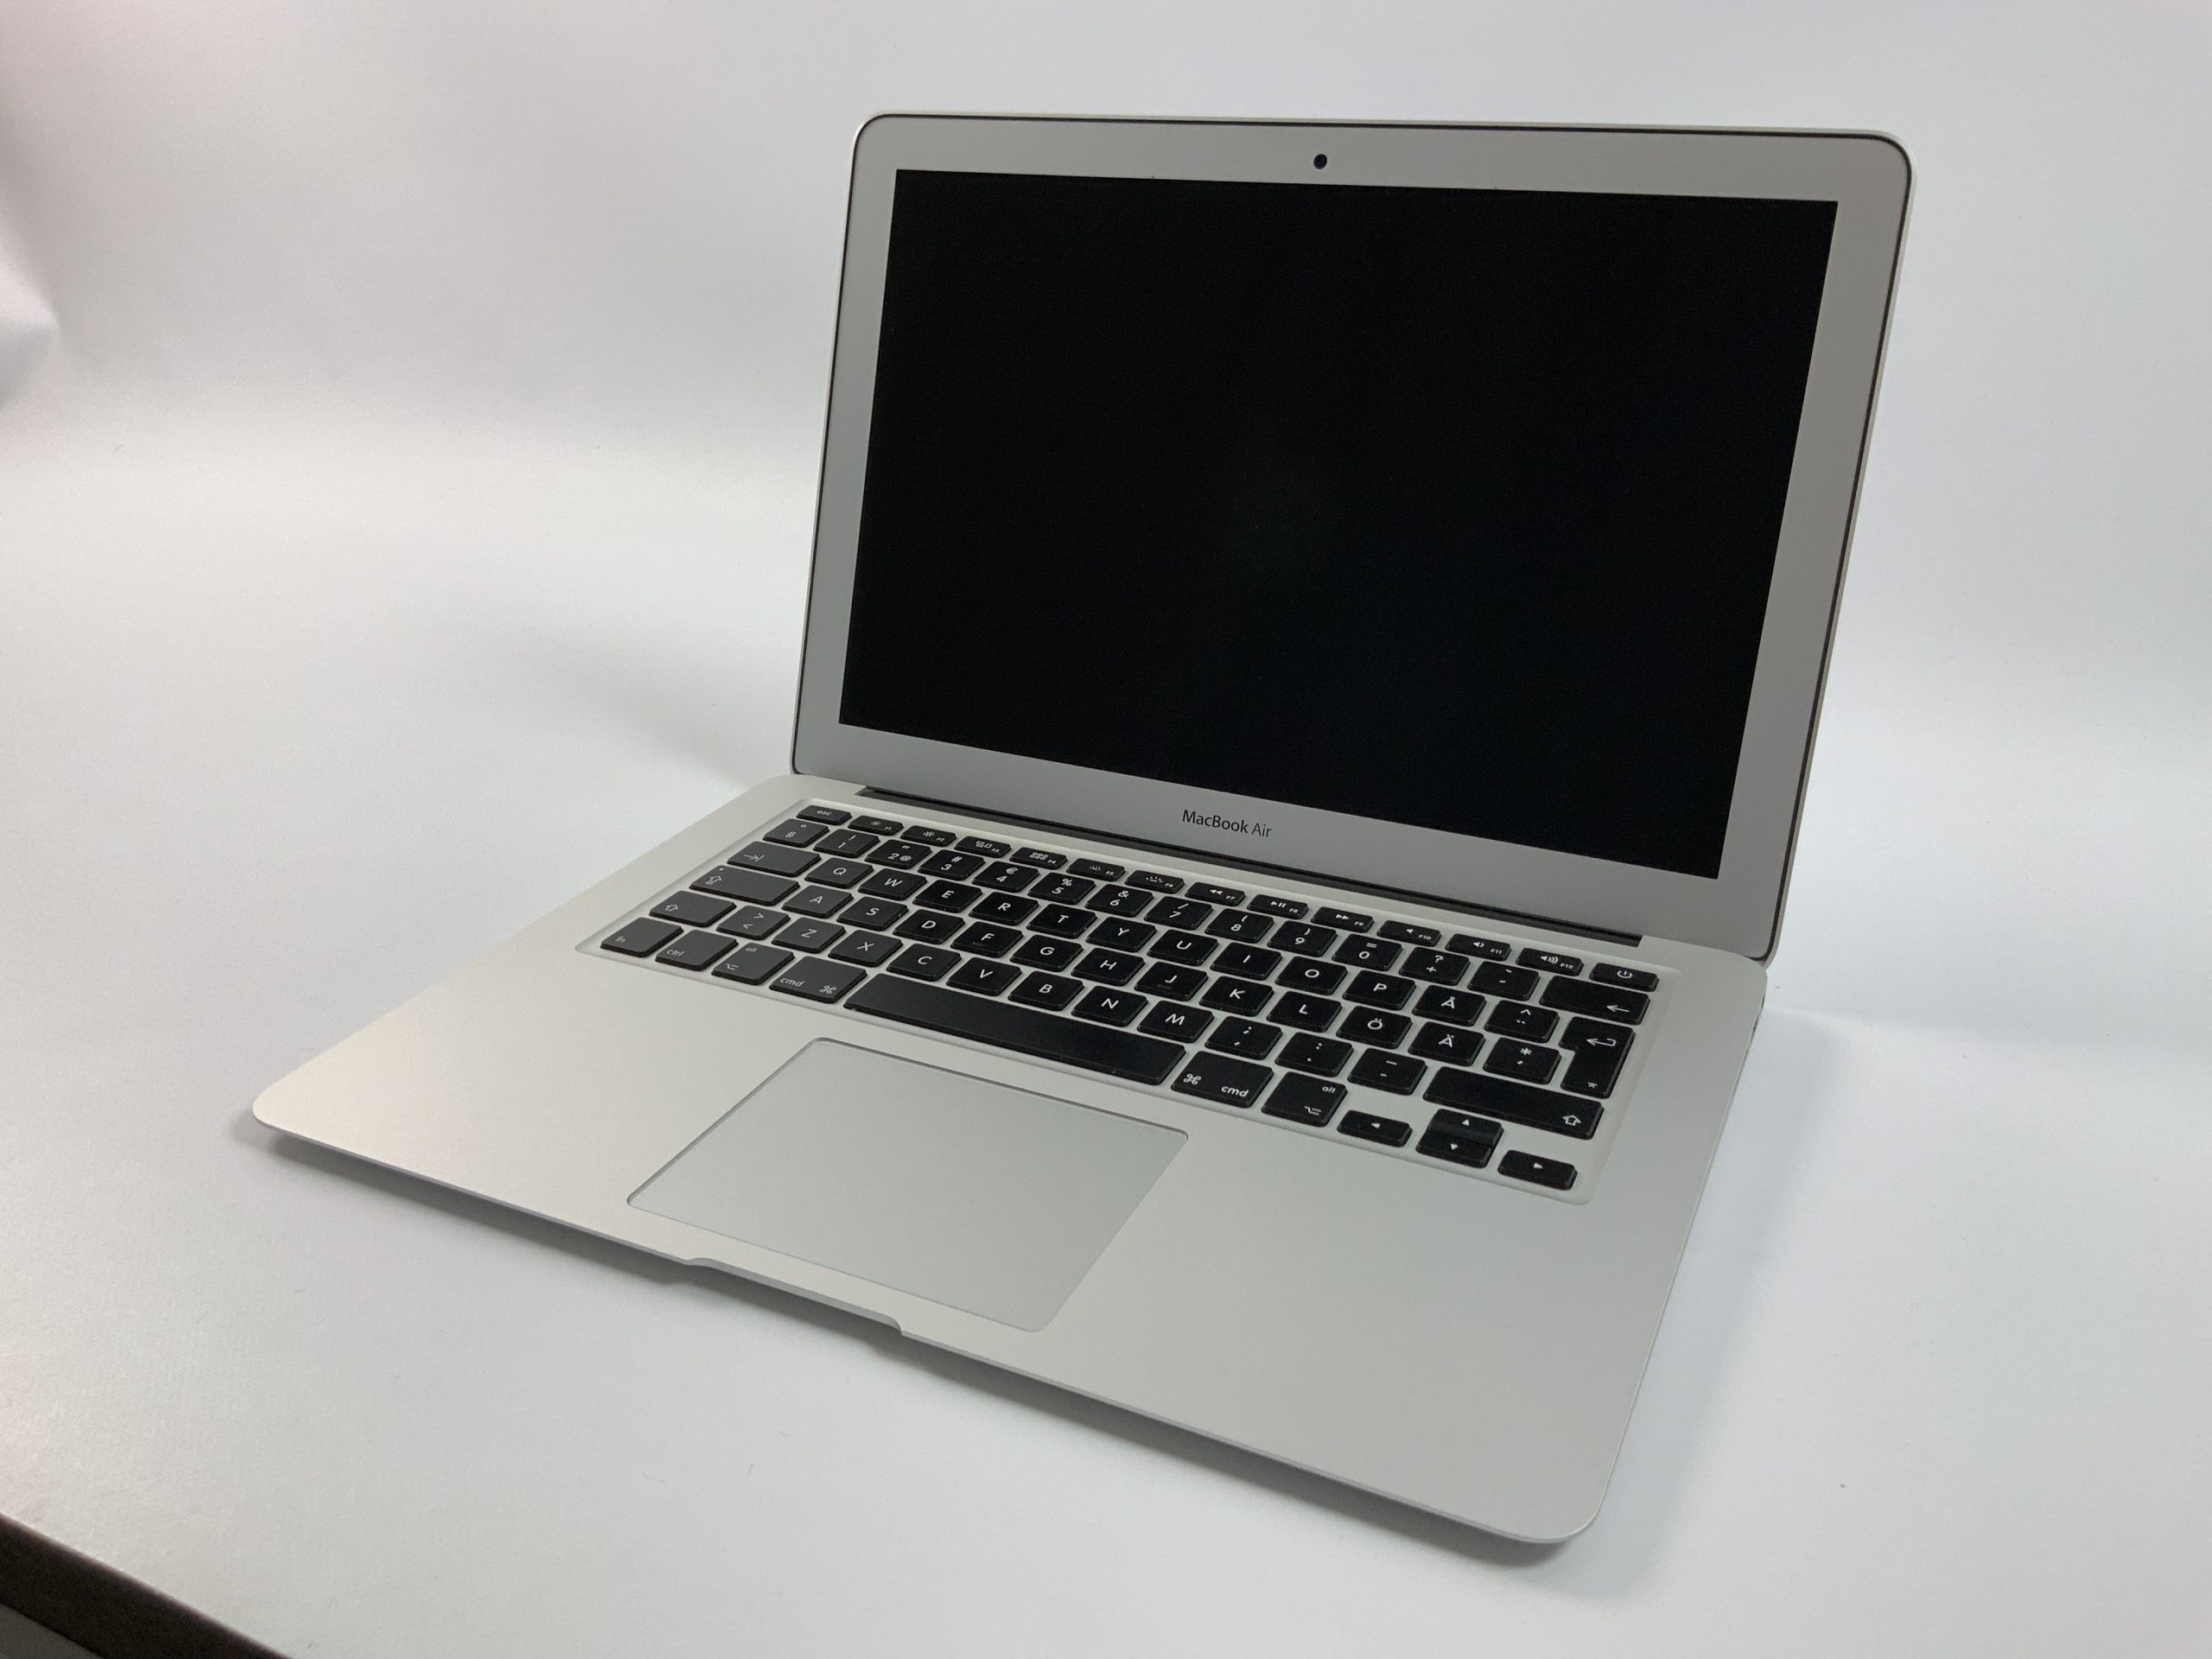 MacBook Air 13" Mid 2017 (Intel Core i5 1.8 GHz 8 GB RAM 256 GB SSD), Intel Core i5 1.8 GHz, 8 GB RAM, 256 GB SSD, image 1